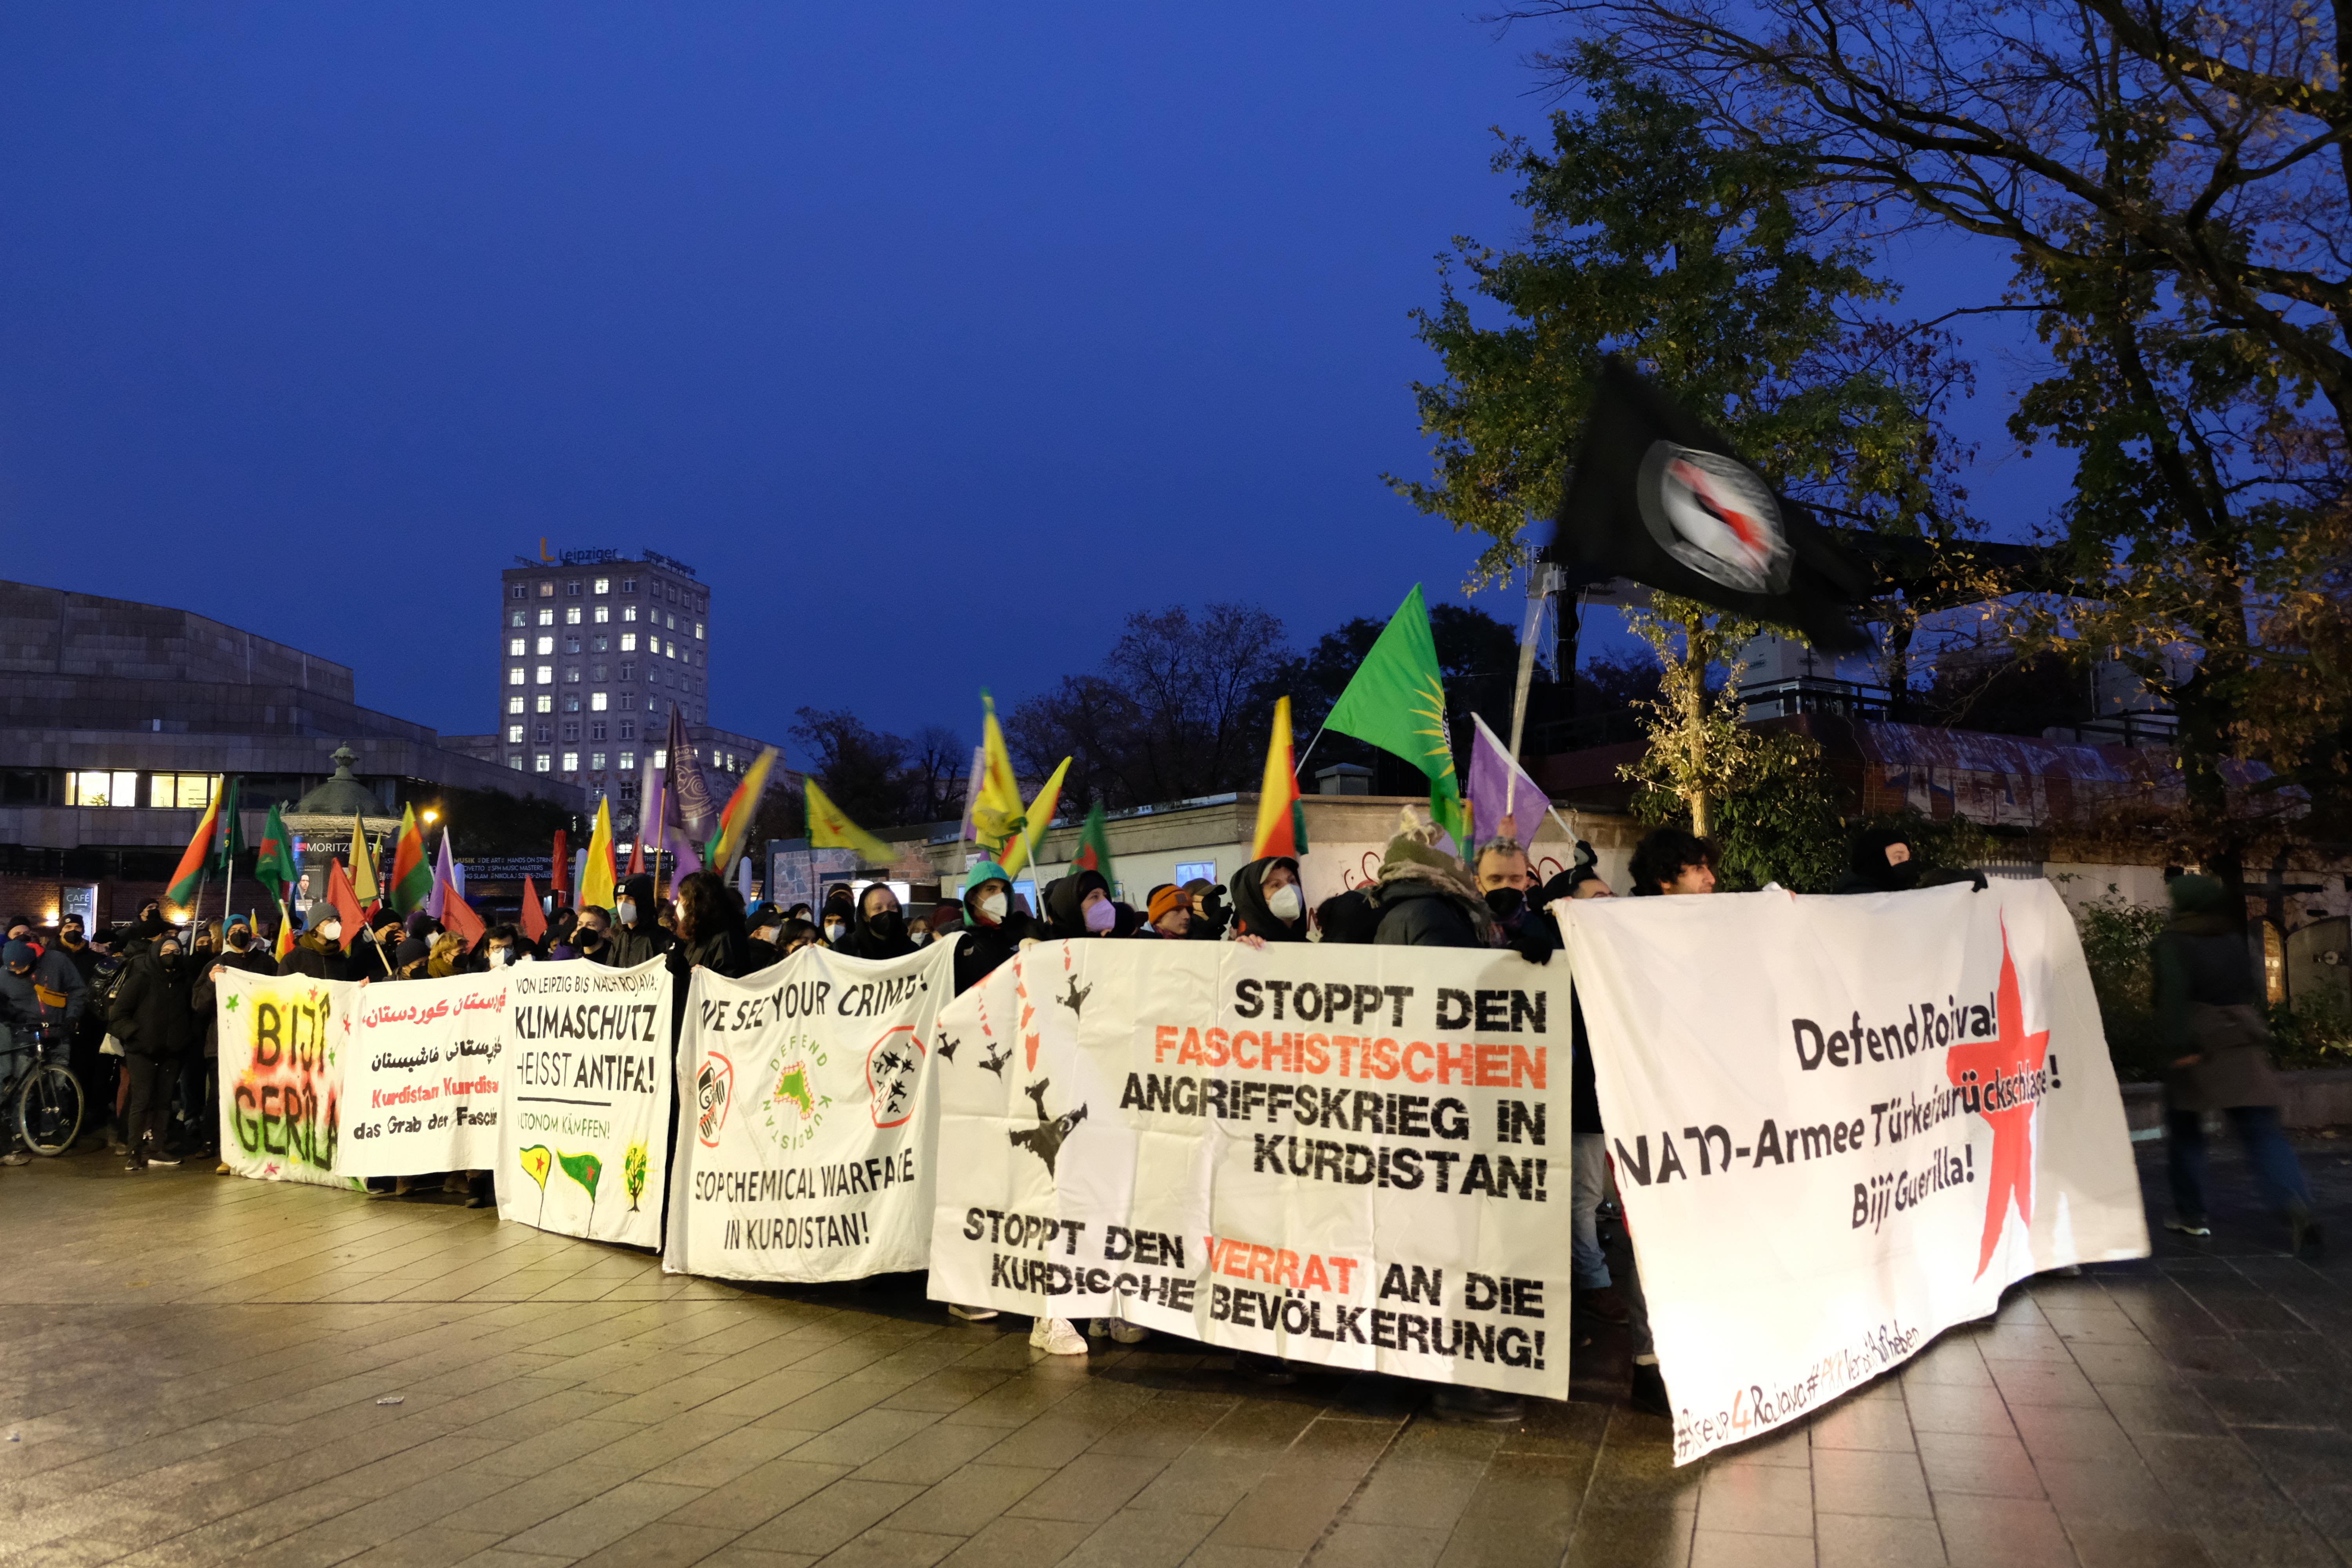   Demo gegen türkischen Angriff auf Kurdistan | In Leipzig demonstrieren verschiedene Gruppen für die Freiheit Kurdistans  